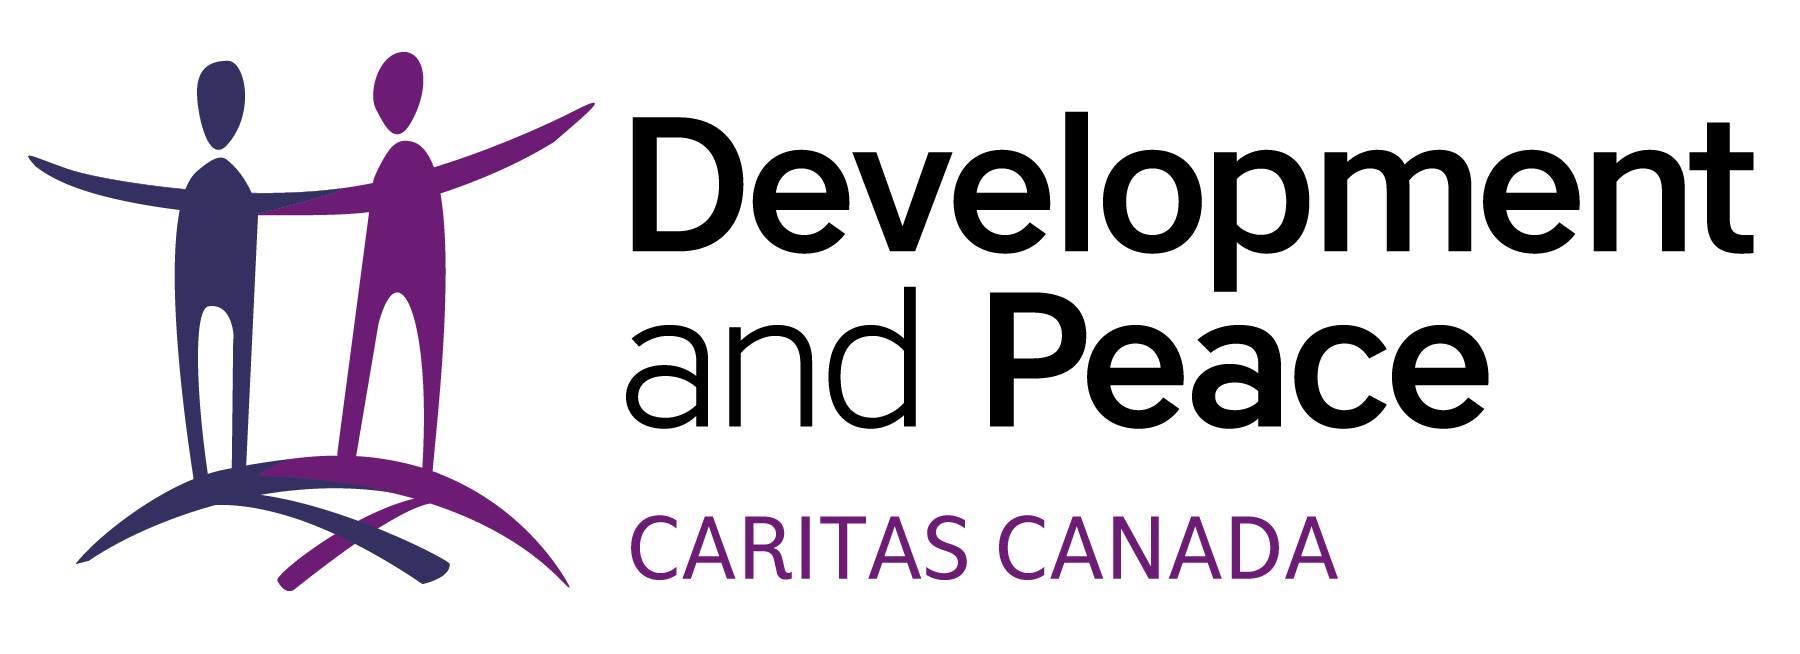 Développement et Paix — Caritas Canada logo